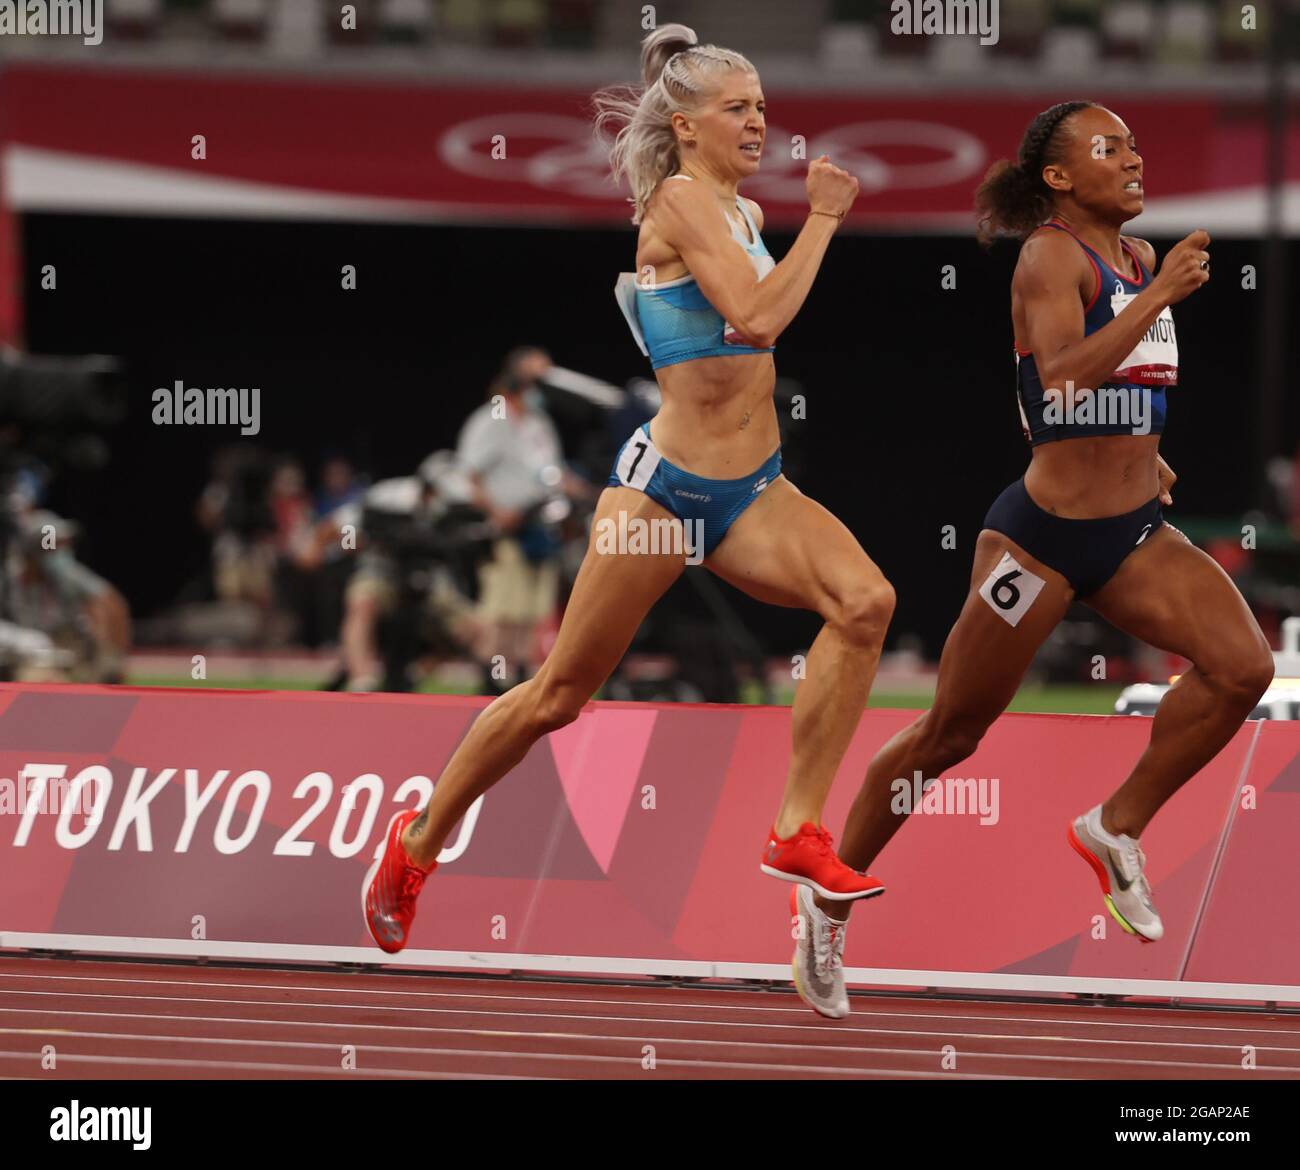 Tokyo, Giappone. 31 luglio 2021. LINEA FINN-ISH: Finale olimpica femminile di 800 metri, il finlandese SARA KUIVISTO, 29, (numero bib 1894) in via di nuovo rompendo il suo ultimo calore per fare le semifinali alle Olimpiadi estive di Tokyo 2020, sabato. Finendo 6° mentre si è infranto un record di 30 anni per le donne finlandesi nei 800 metri, si è registrato un nuovo record finlandese di 1.59.41 nelle semifinali di 800 metri delle Olimpiadi di Tokyo. Questa è la prima volta che una donna finlandese ha percorso 800 metri in meno di due minuti. (Credit ALL Usages: © Scott Mc Kiernan/ZUMA Press Wire) Foto Stock